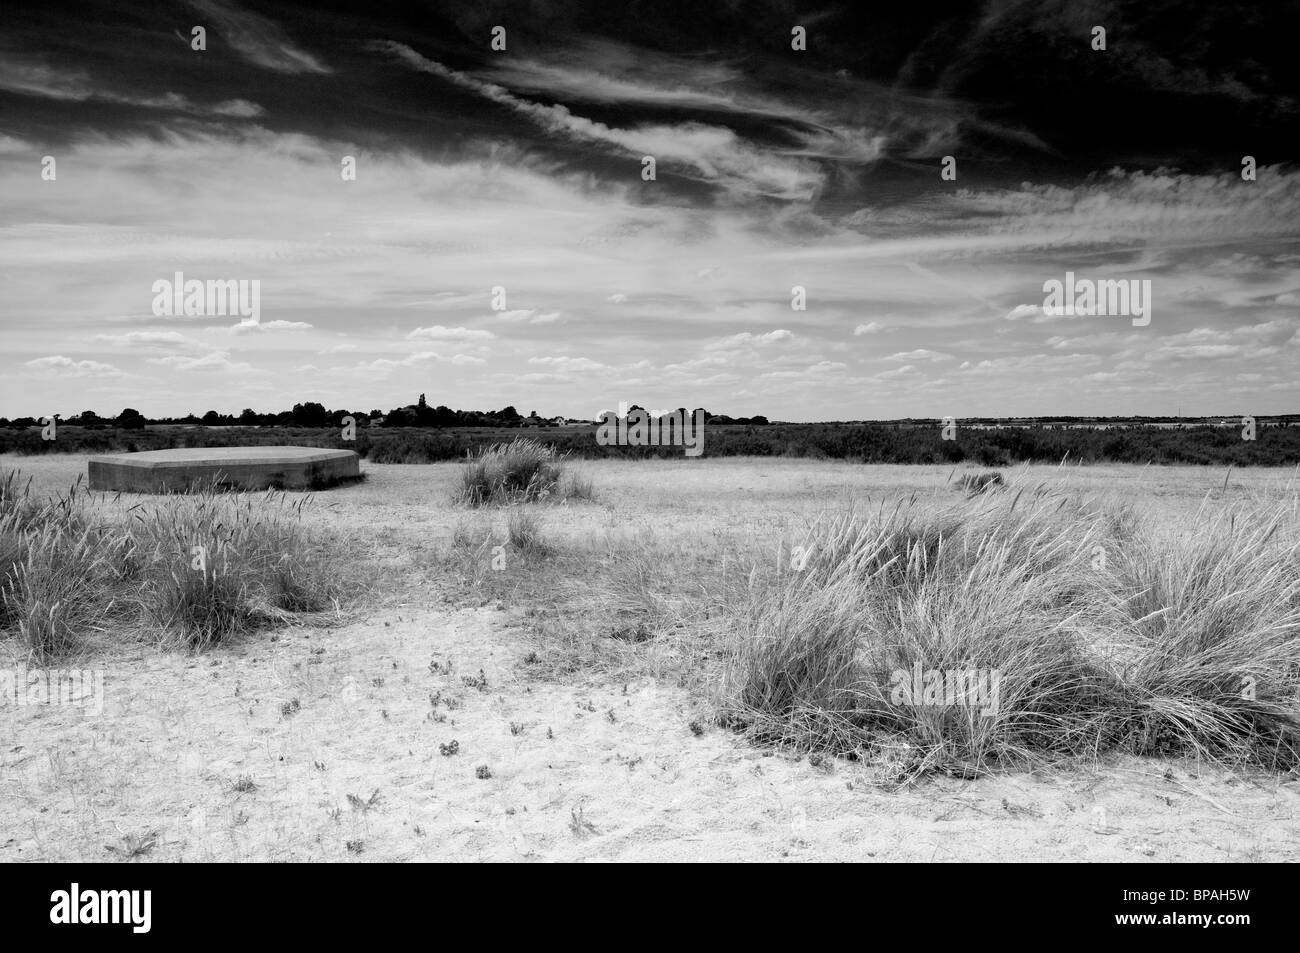 Una scatola di pillole sulla spiaggia nelle zone costiere Essex. Sabbia e erba in primo piano e uno scuro, drammatico, cielo nuvoloso. In bianco e nero. Foto Stock